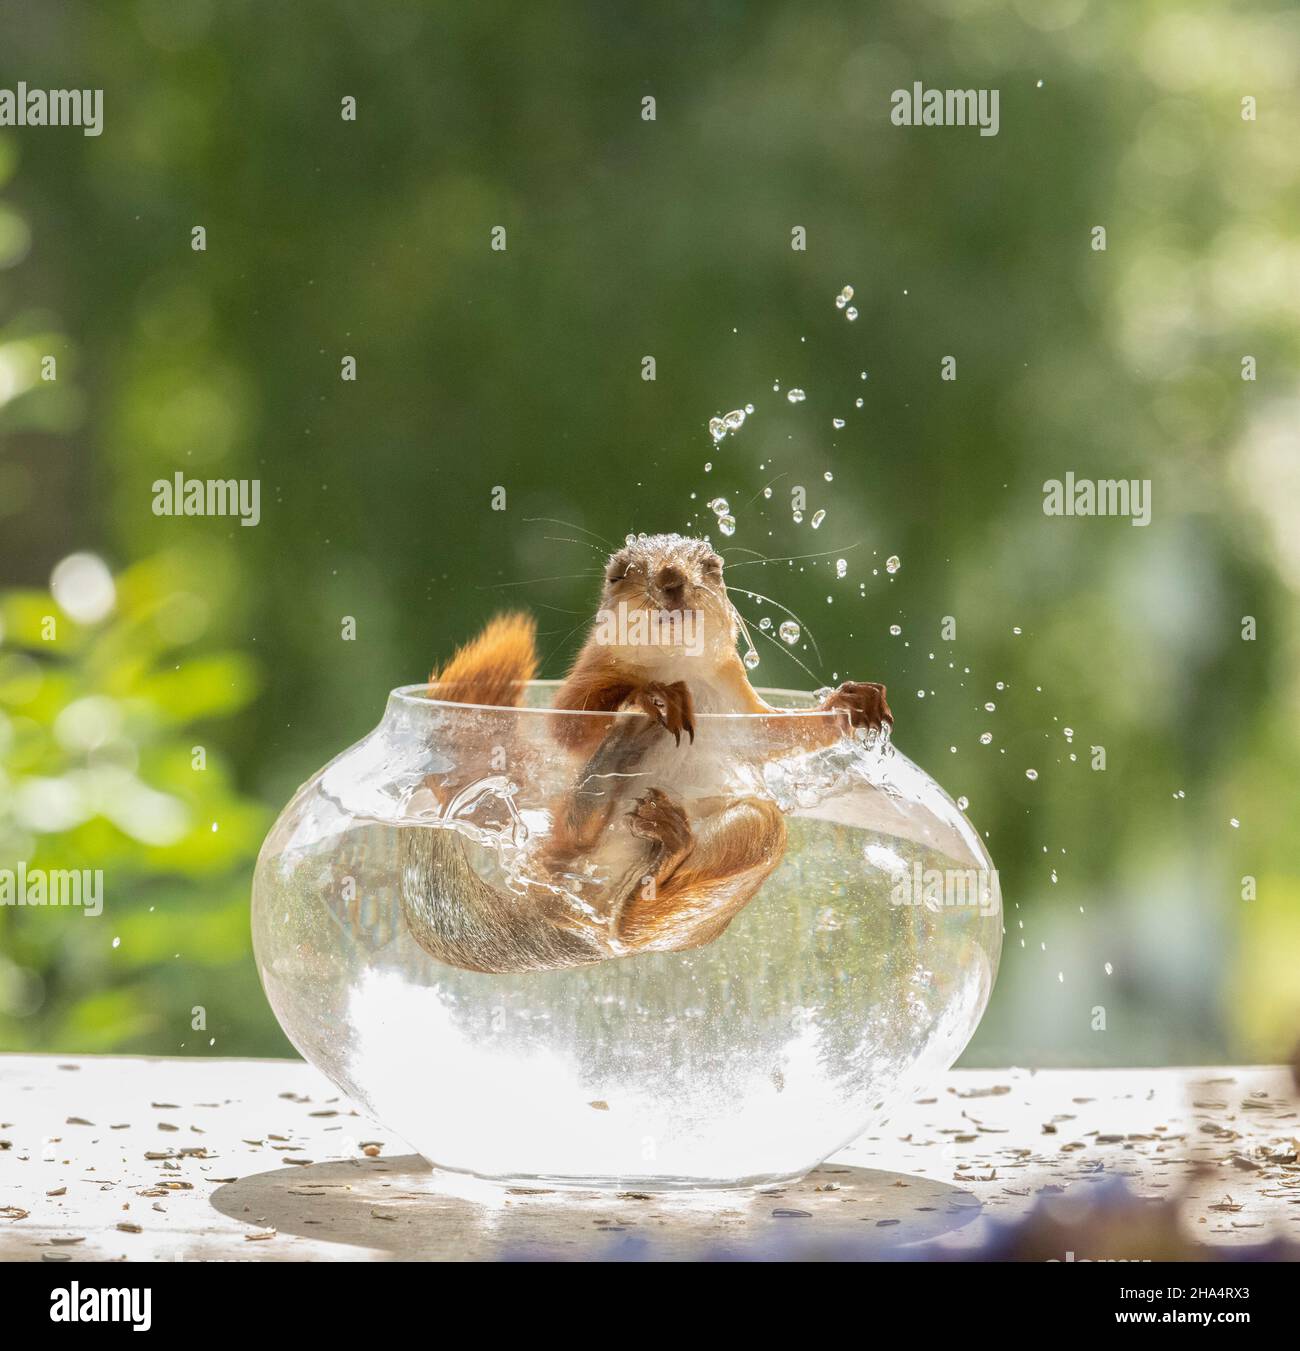 un jeune écureuil rouge tombe dans l'eau d'un bol à poissons Banque D'Images